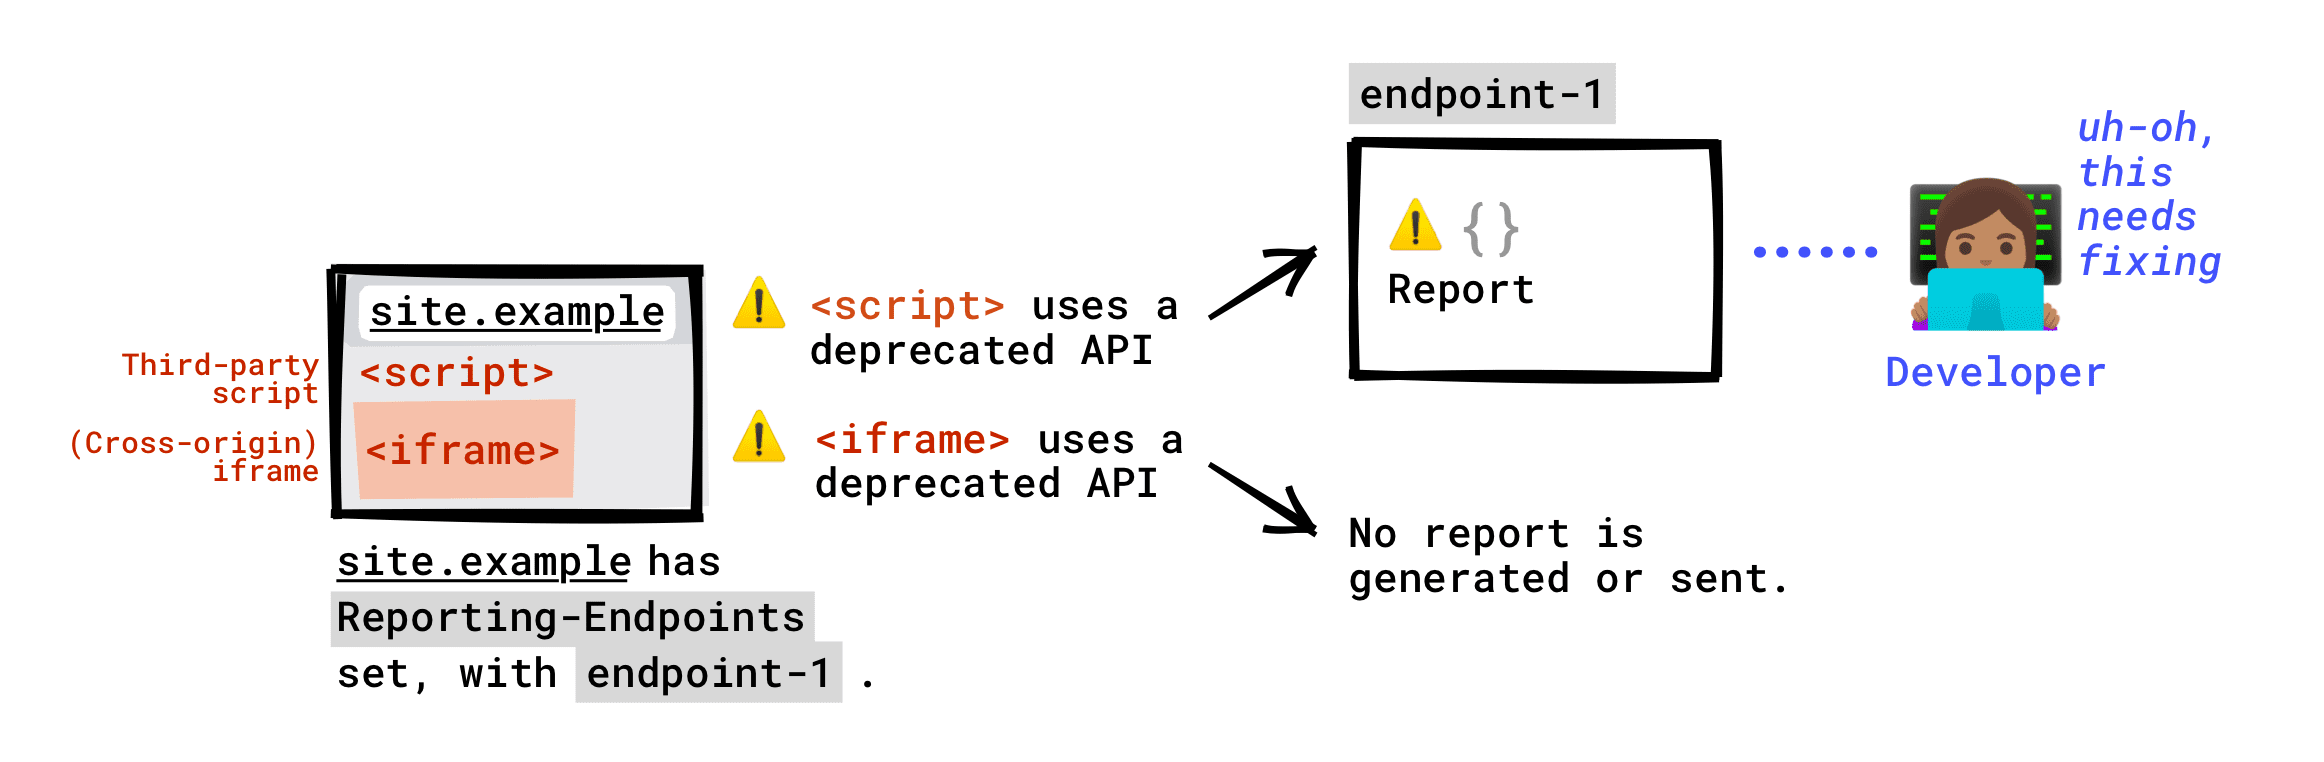 Если на вашей странице настроен заголовок Reporting-Endpoints: на вашу конечную точку будет отправлено сообщение об устаревшем API, вызываемом сторонними скриптами, запущенными на вашей странице. Об устаревшем API, вызываемом iframe, встроенным в вашу страницу, не будет сообщено на вашу конечную точку. Отчет об устаревании будет создан только в том случае, если сервер iframe настроил конечные точки отчетов, и этот отчет будет отправлен в любую конечную точку, настроенную сервером iframe.